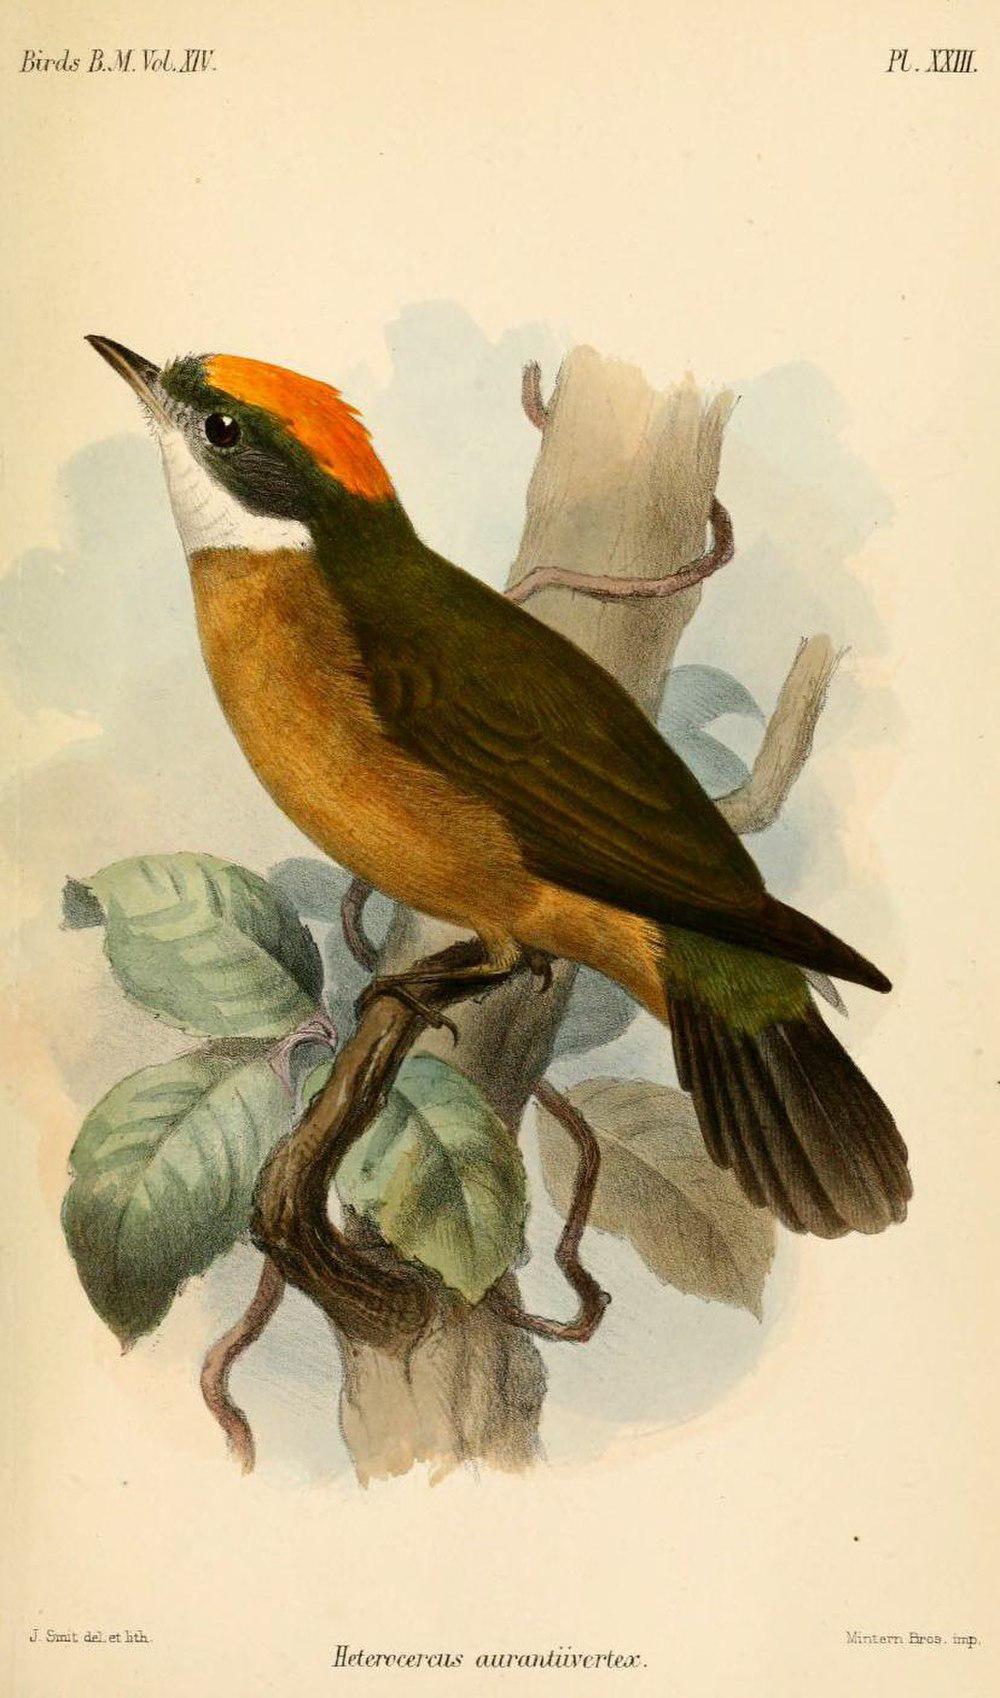 橙顶娇鹟 / Orange-crested Manakin / Heterocercus aurantiivertex